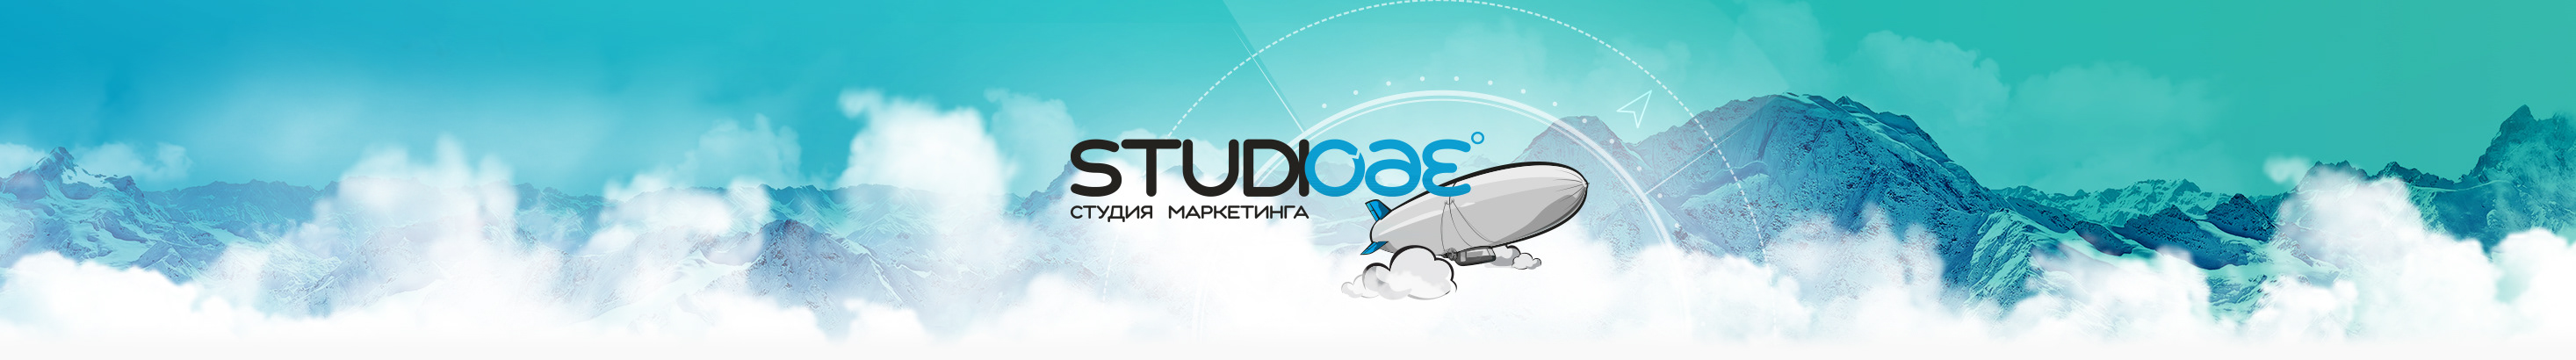 STUDIO 360's profile banner